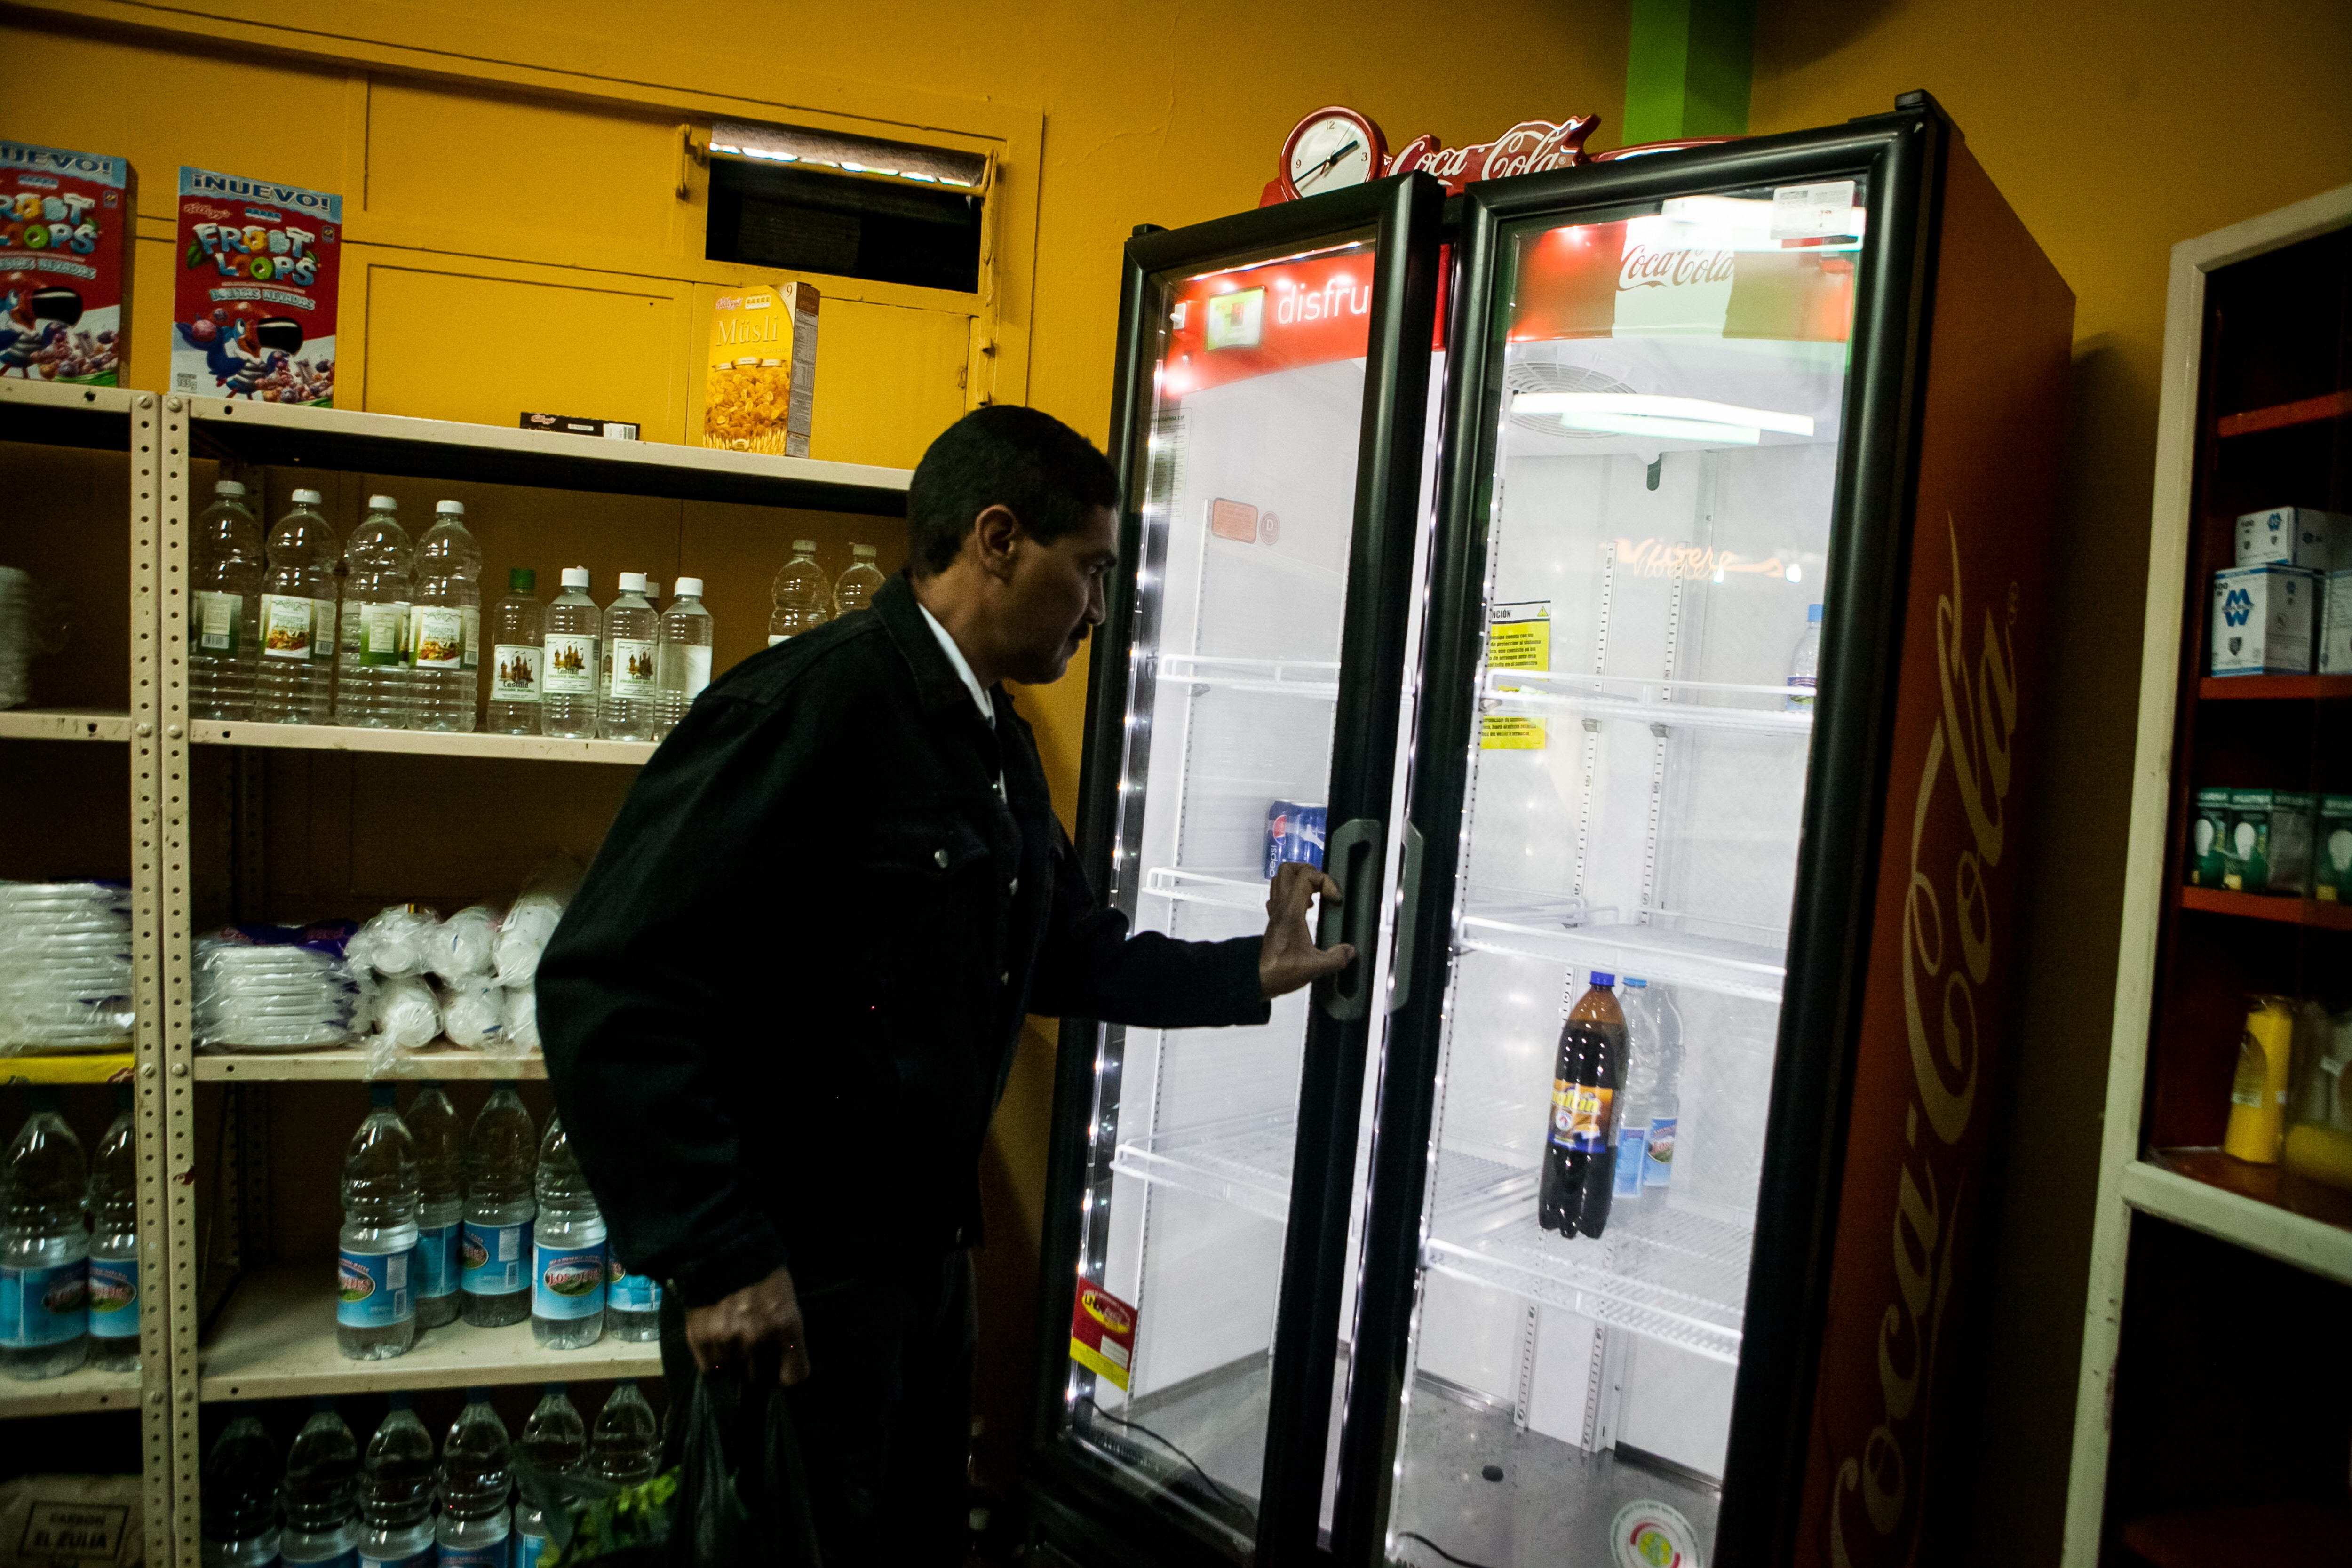 El exagerado precio “susto” del refresco de dos litros (Foto)